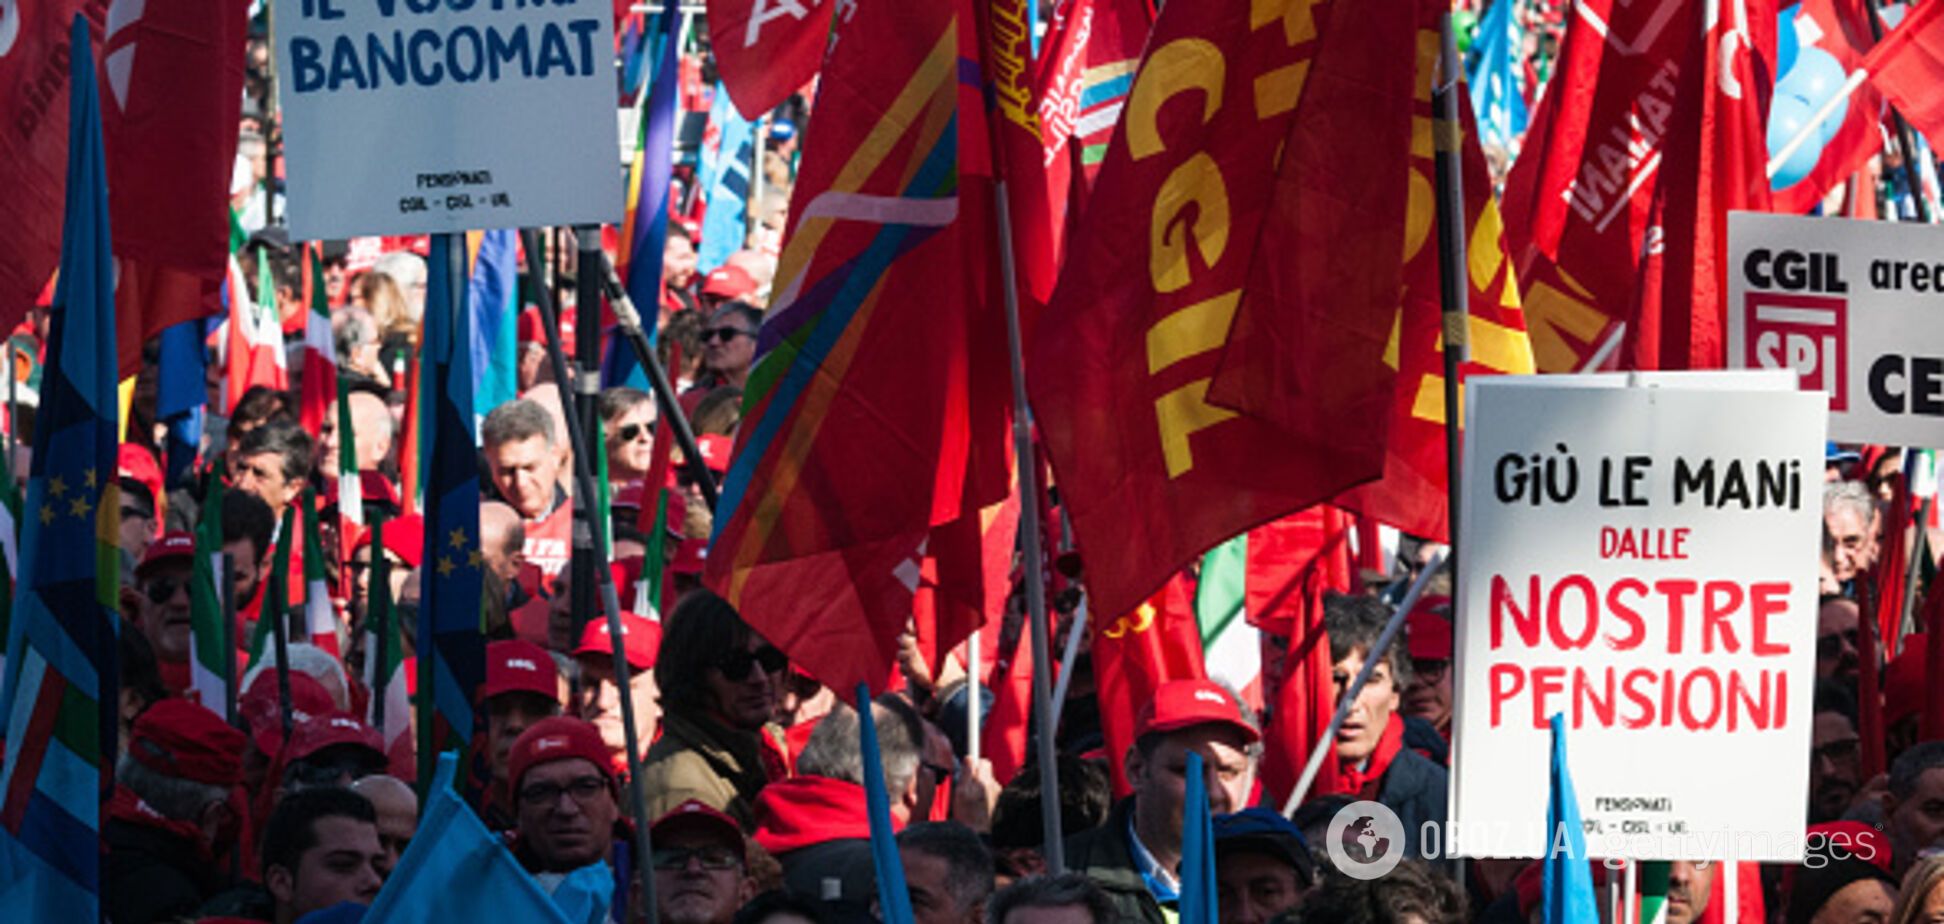 Тысячи итальянцев вышли на антиправительственные протесты в Риме: фото и видео